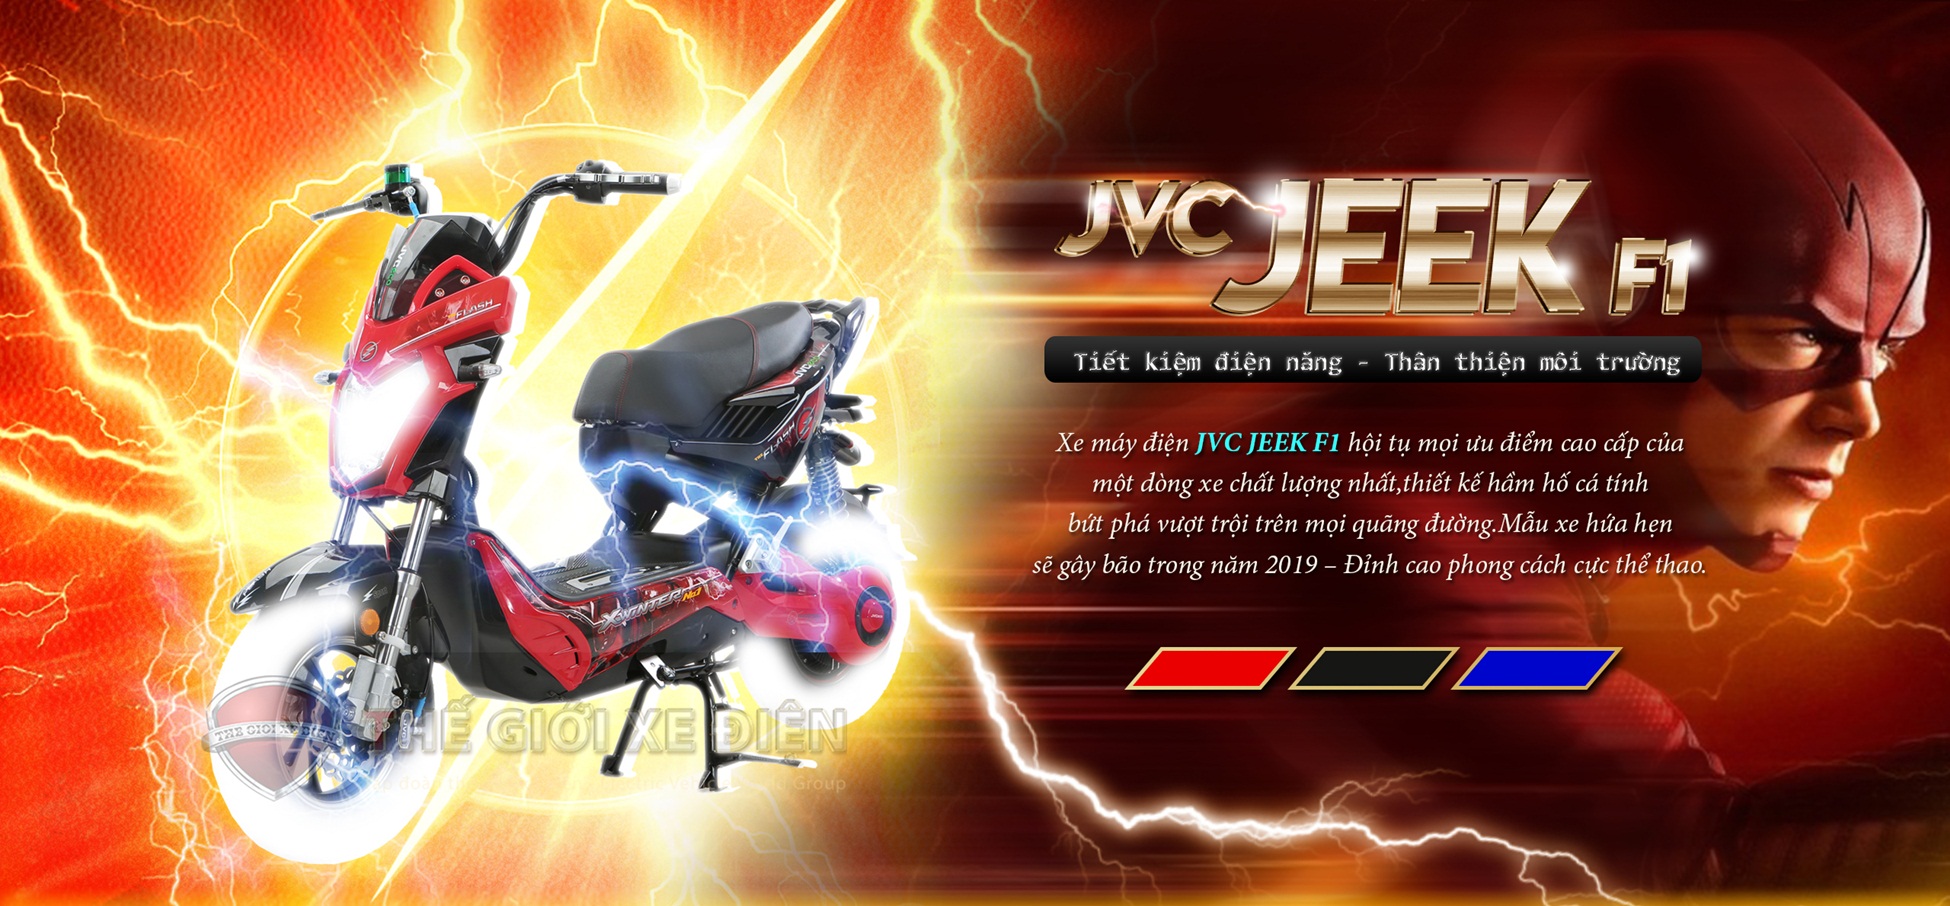 Xe máy điện JVC Xmen F1 Plus - Đỉnh cao phong cách cực chất thể thao